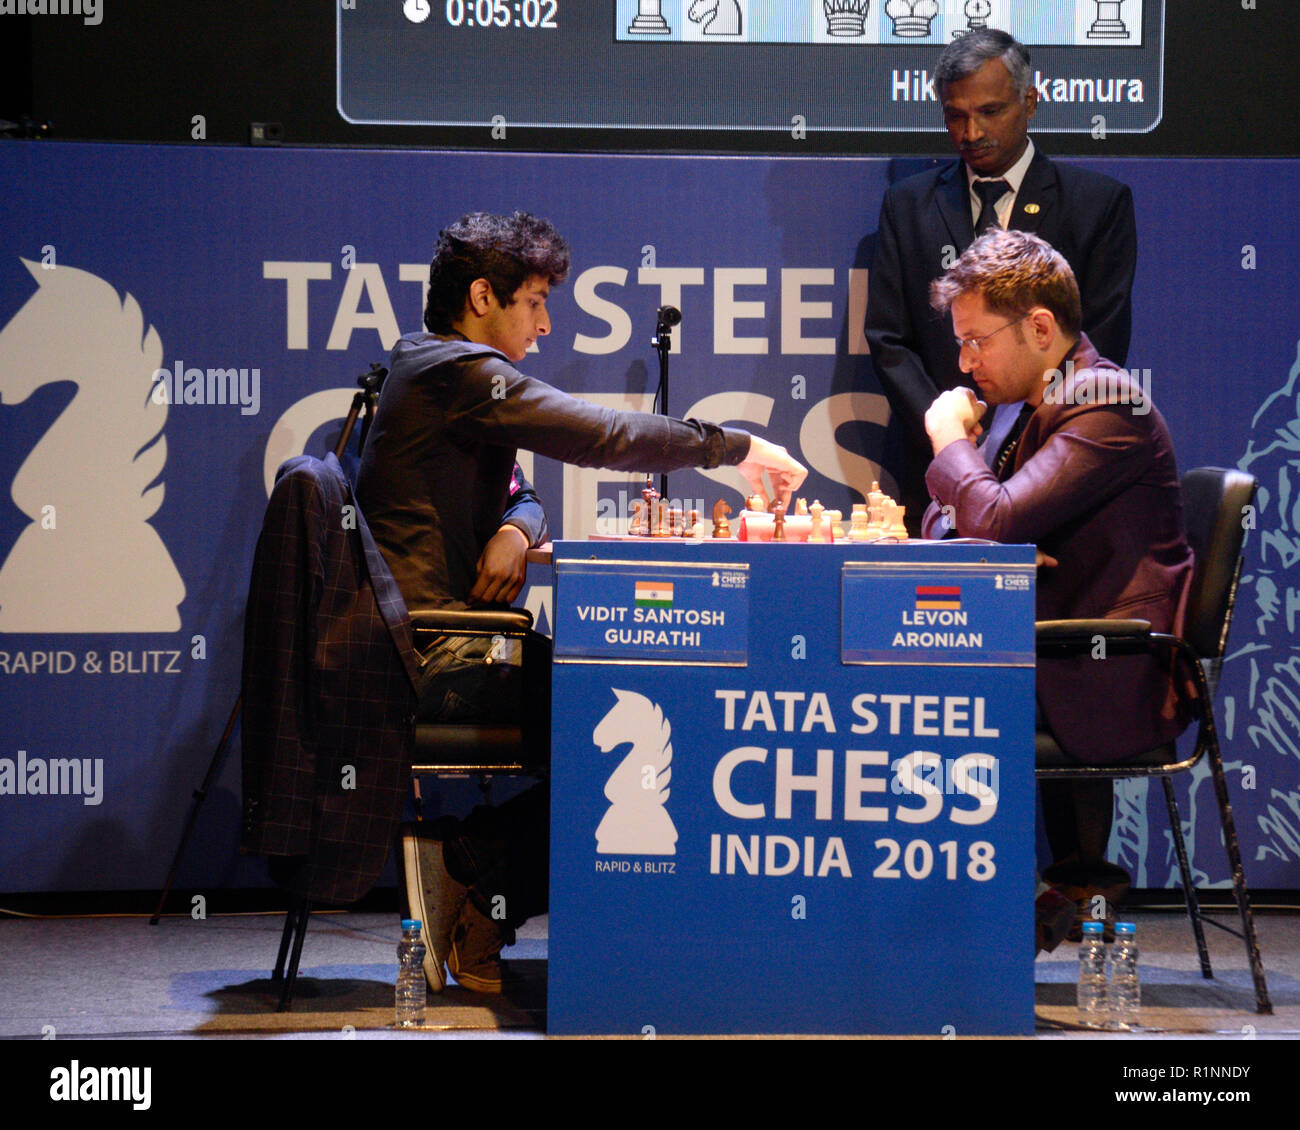 Tata Steel India Blitz LIVE